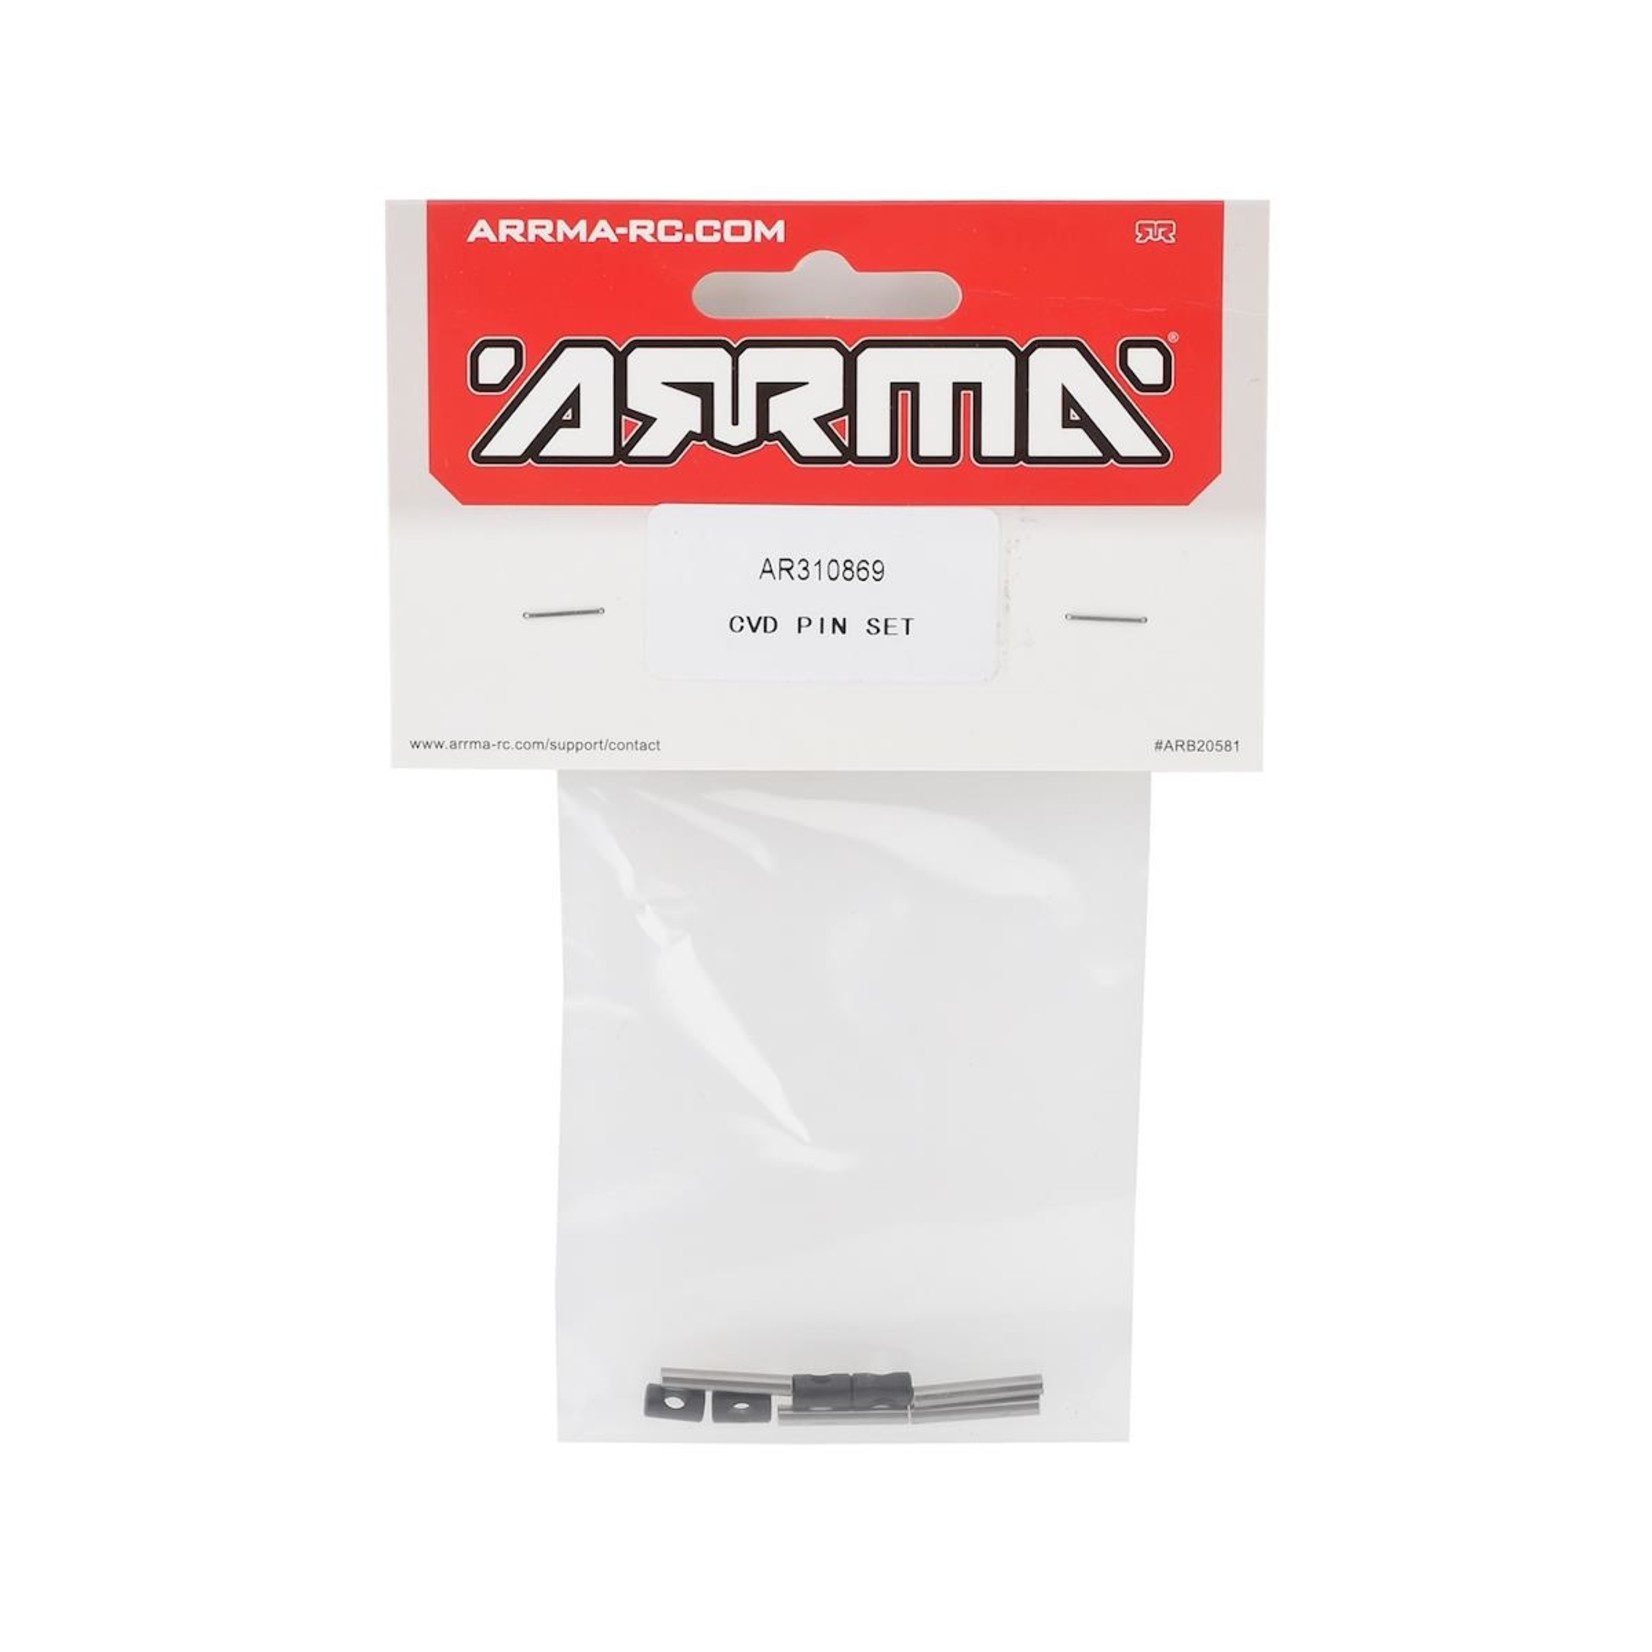 ARRMA Arrma 4X4 Mega CVD Pin Set #AR310869